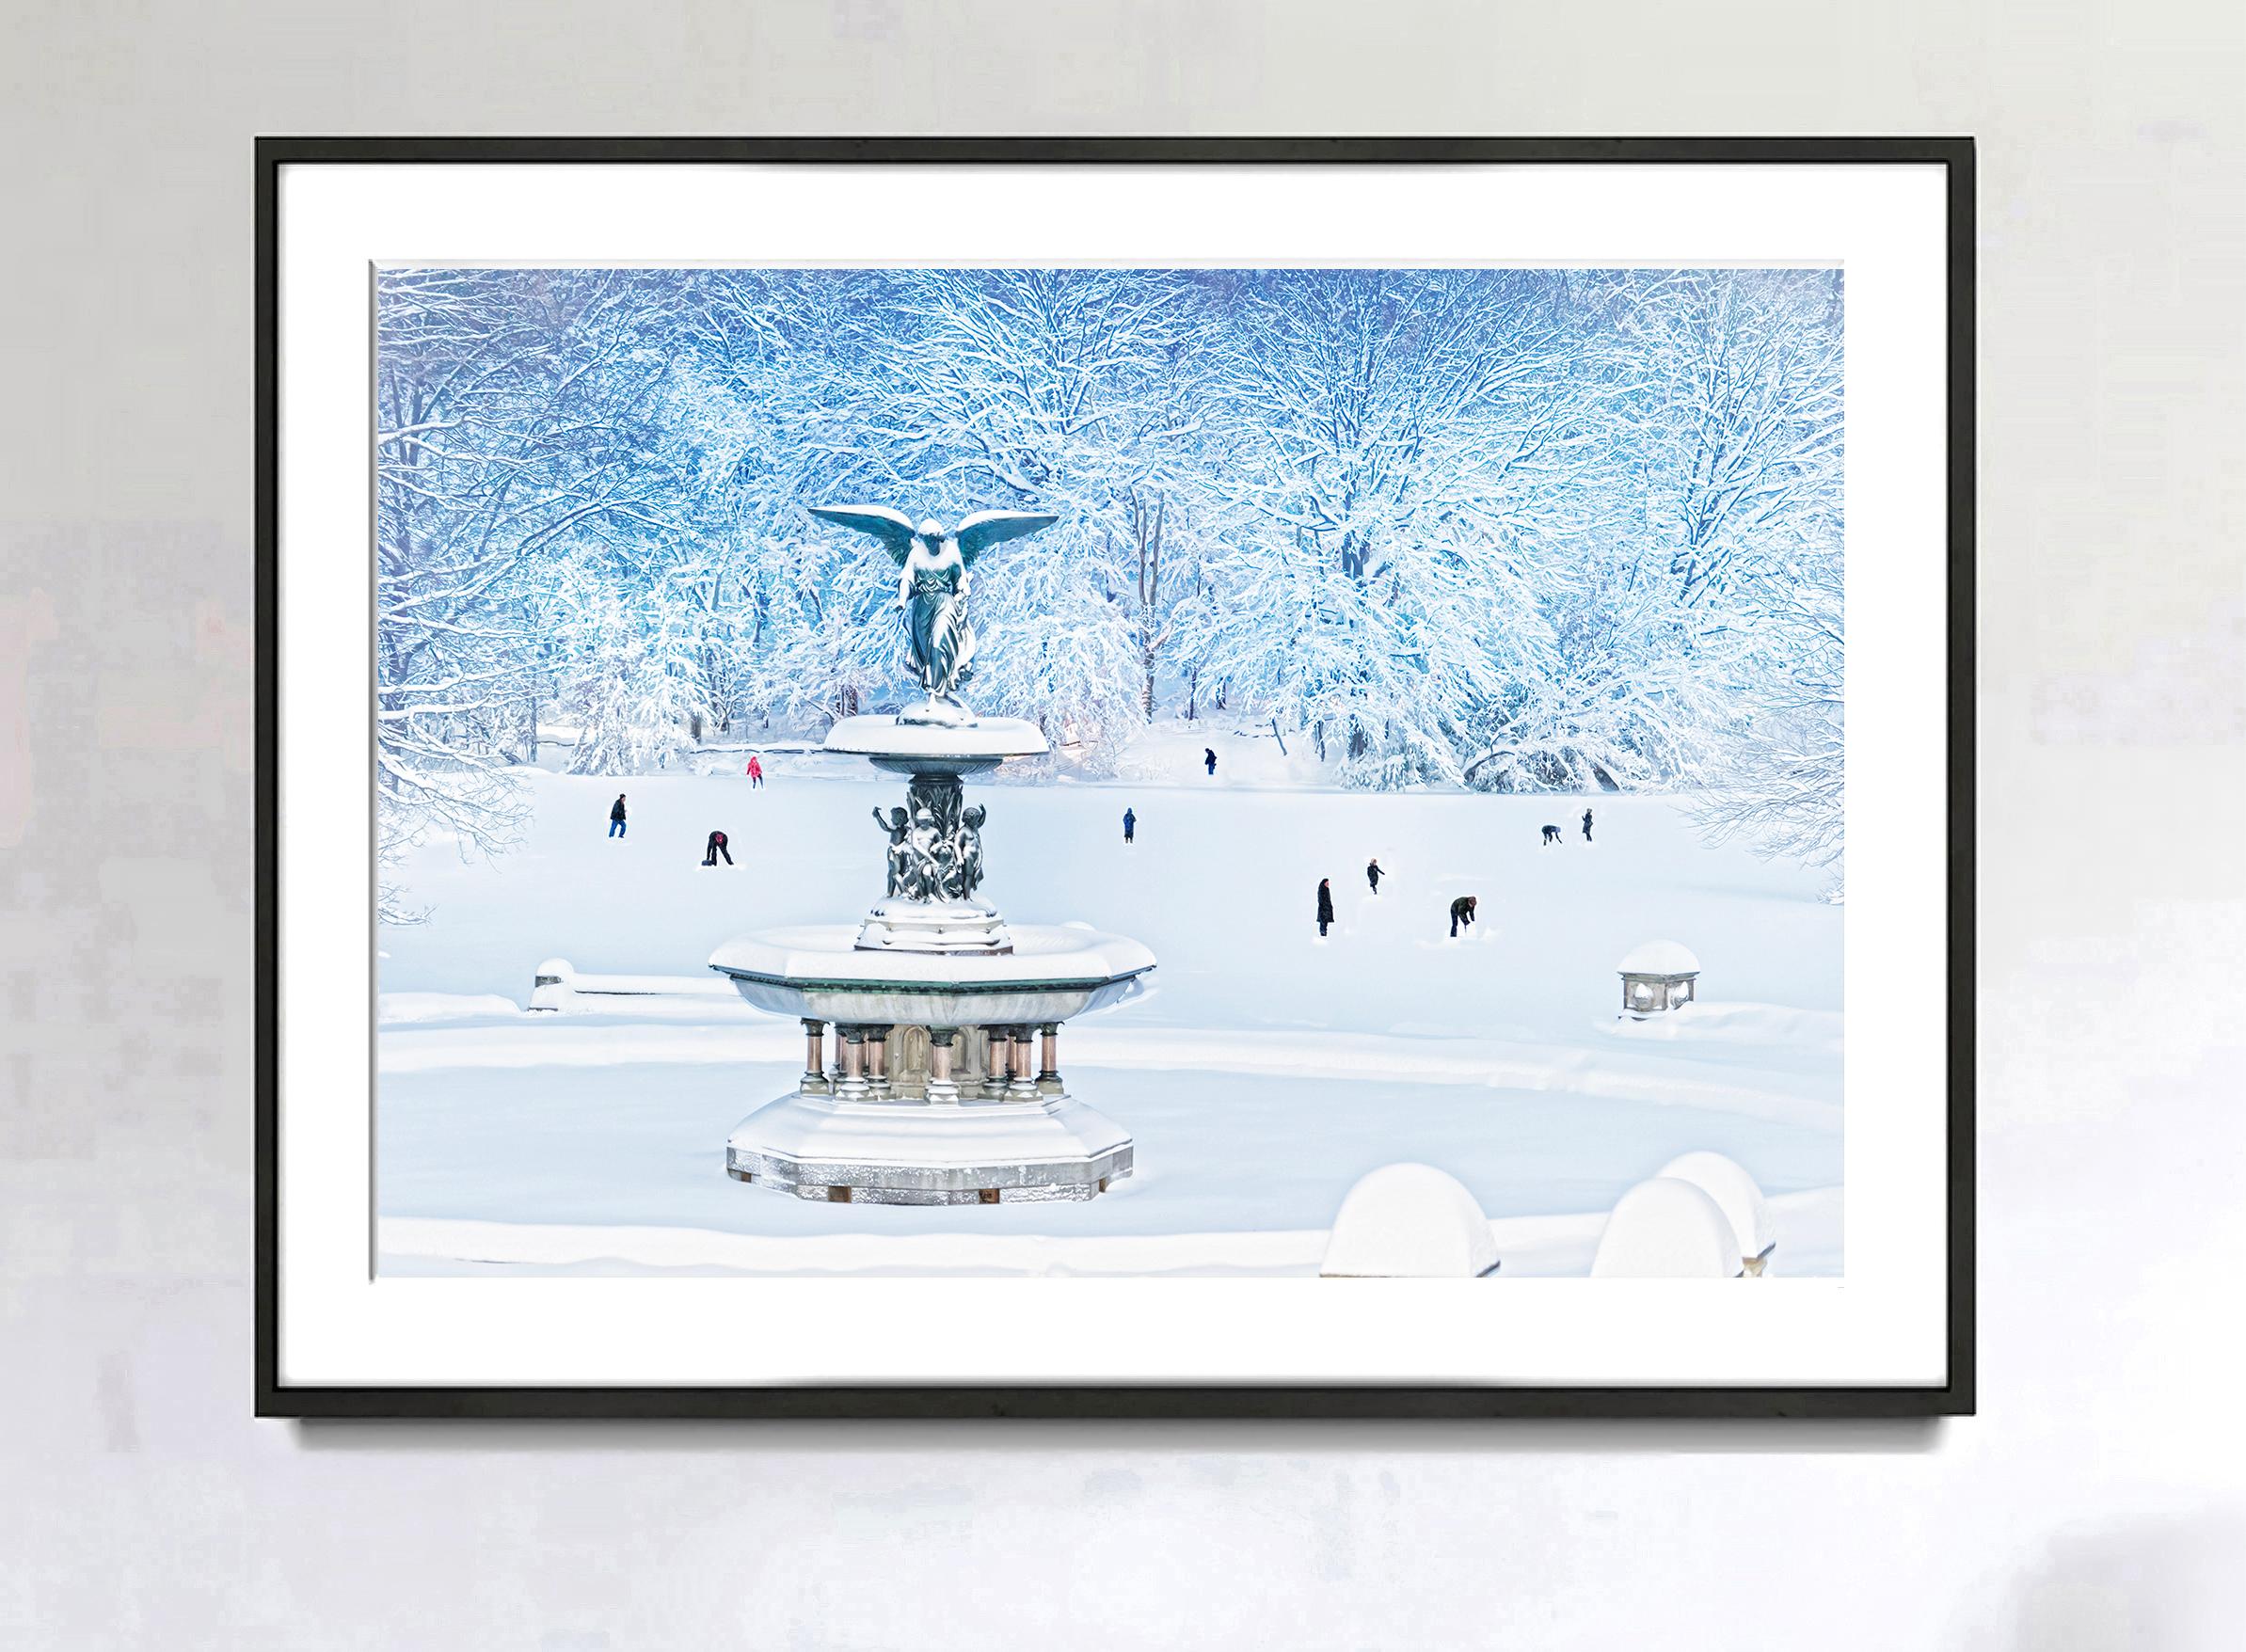 Impressionistischer Snow Storm –   Bethesda Springbrunnen Central Park  – Photograph von Mitchell Funk